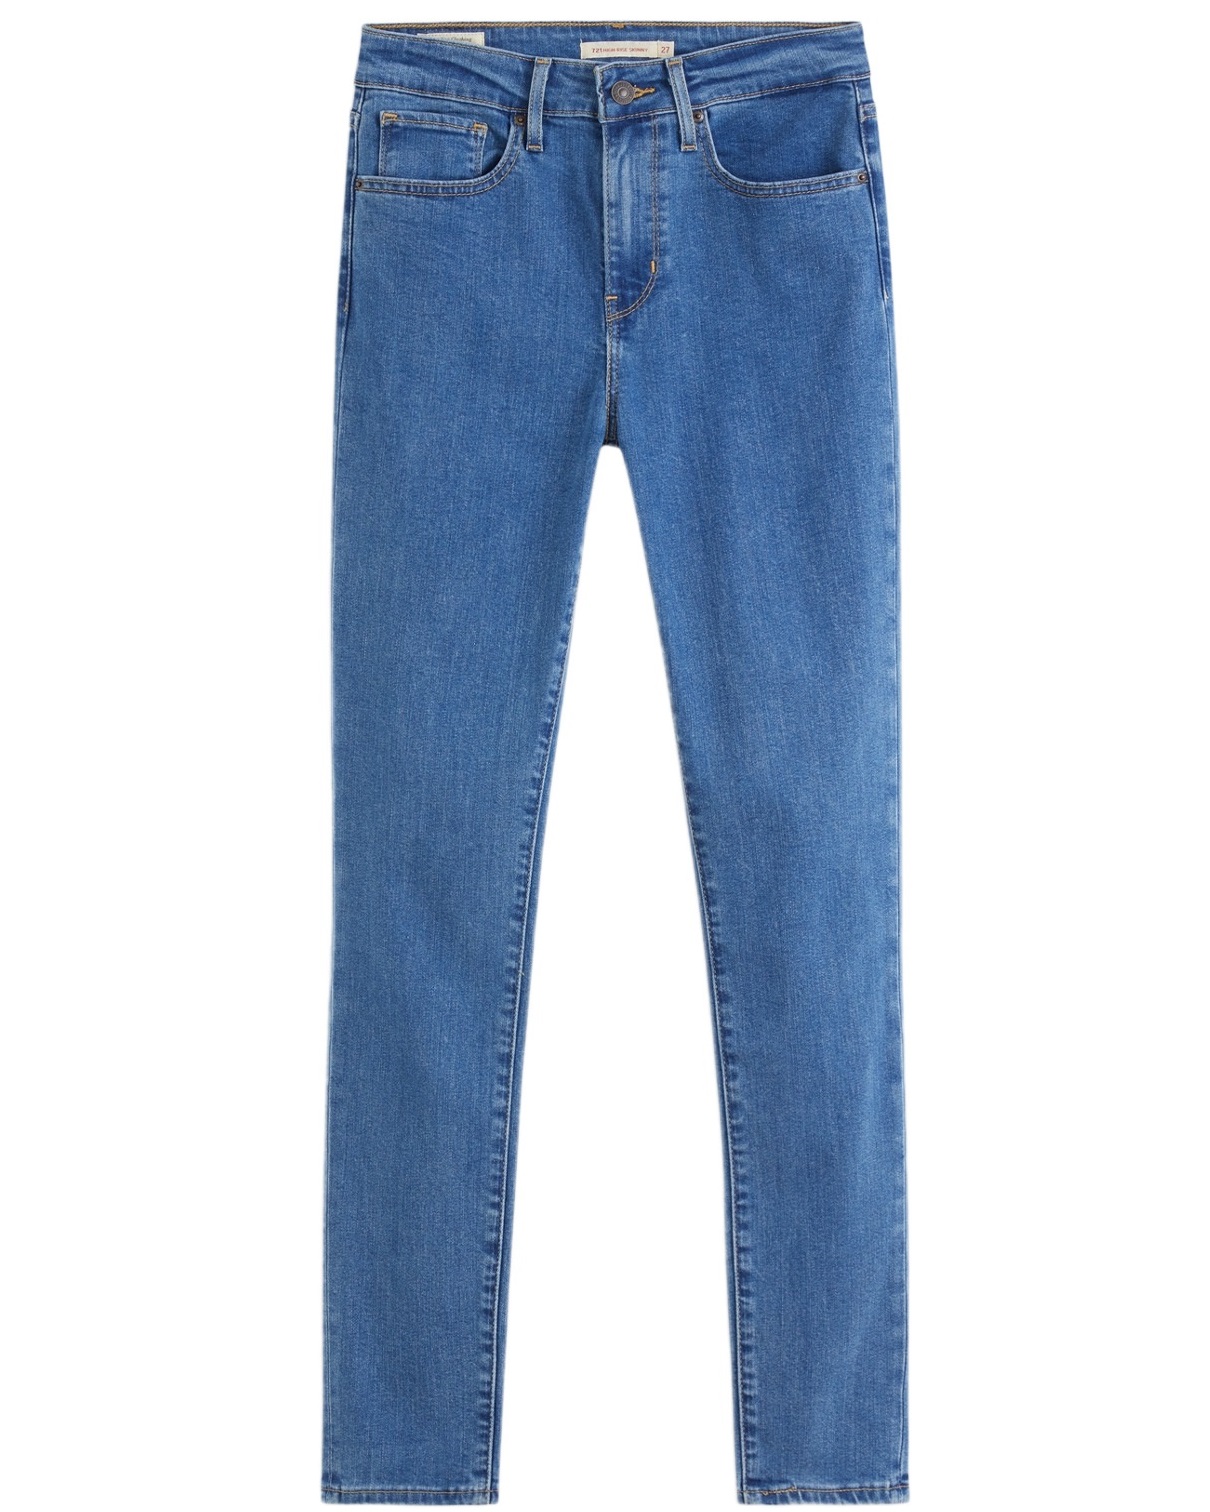 Джинсы женские Levi's 721 High Rise Skinny Jeans синие 50